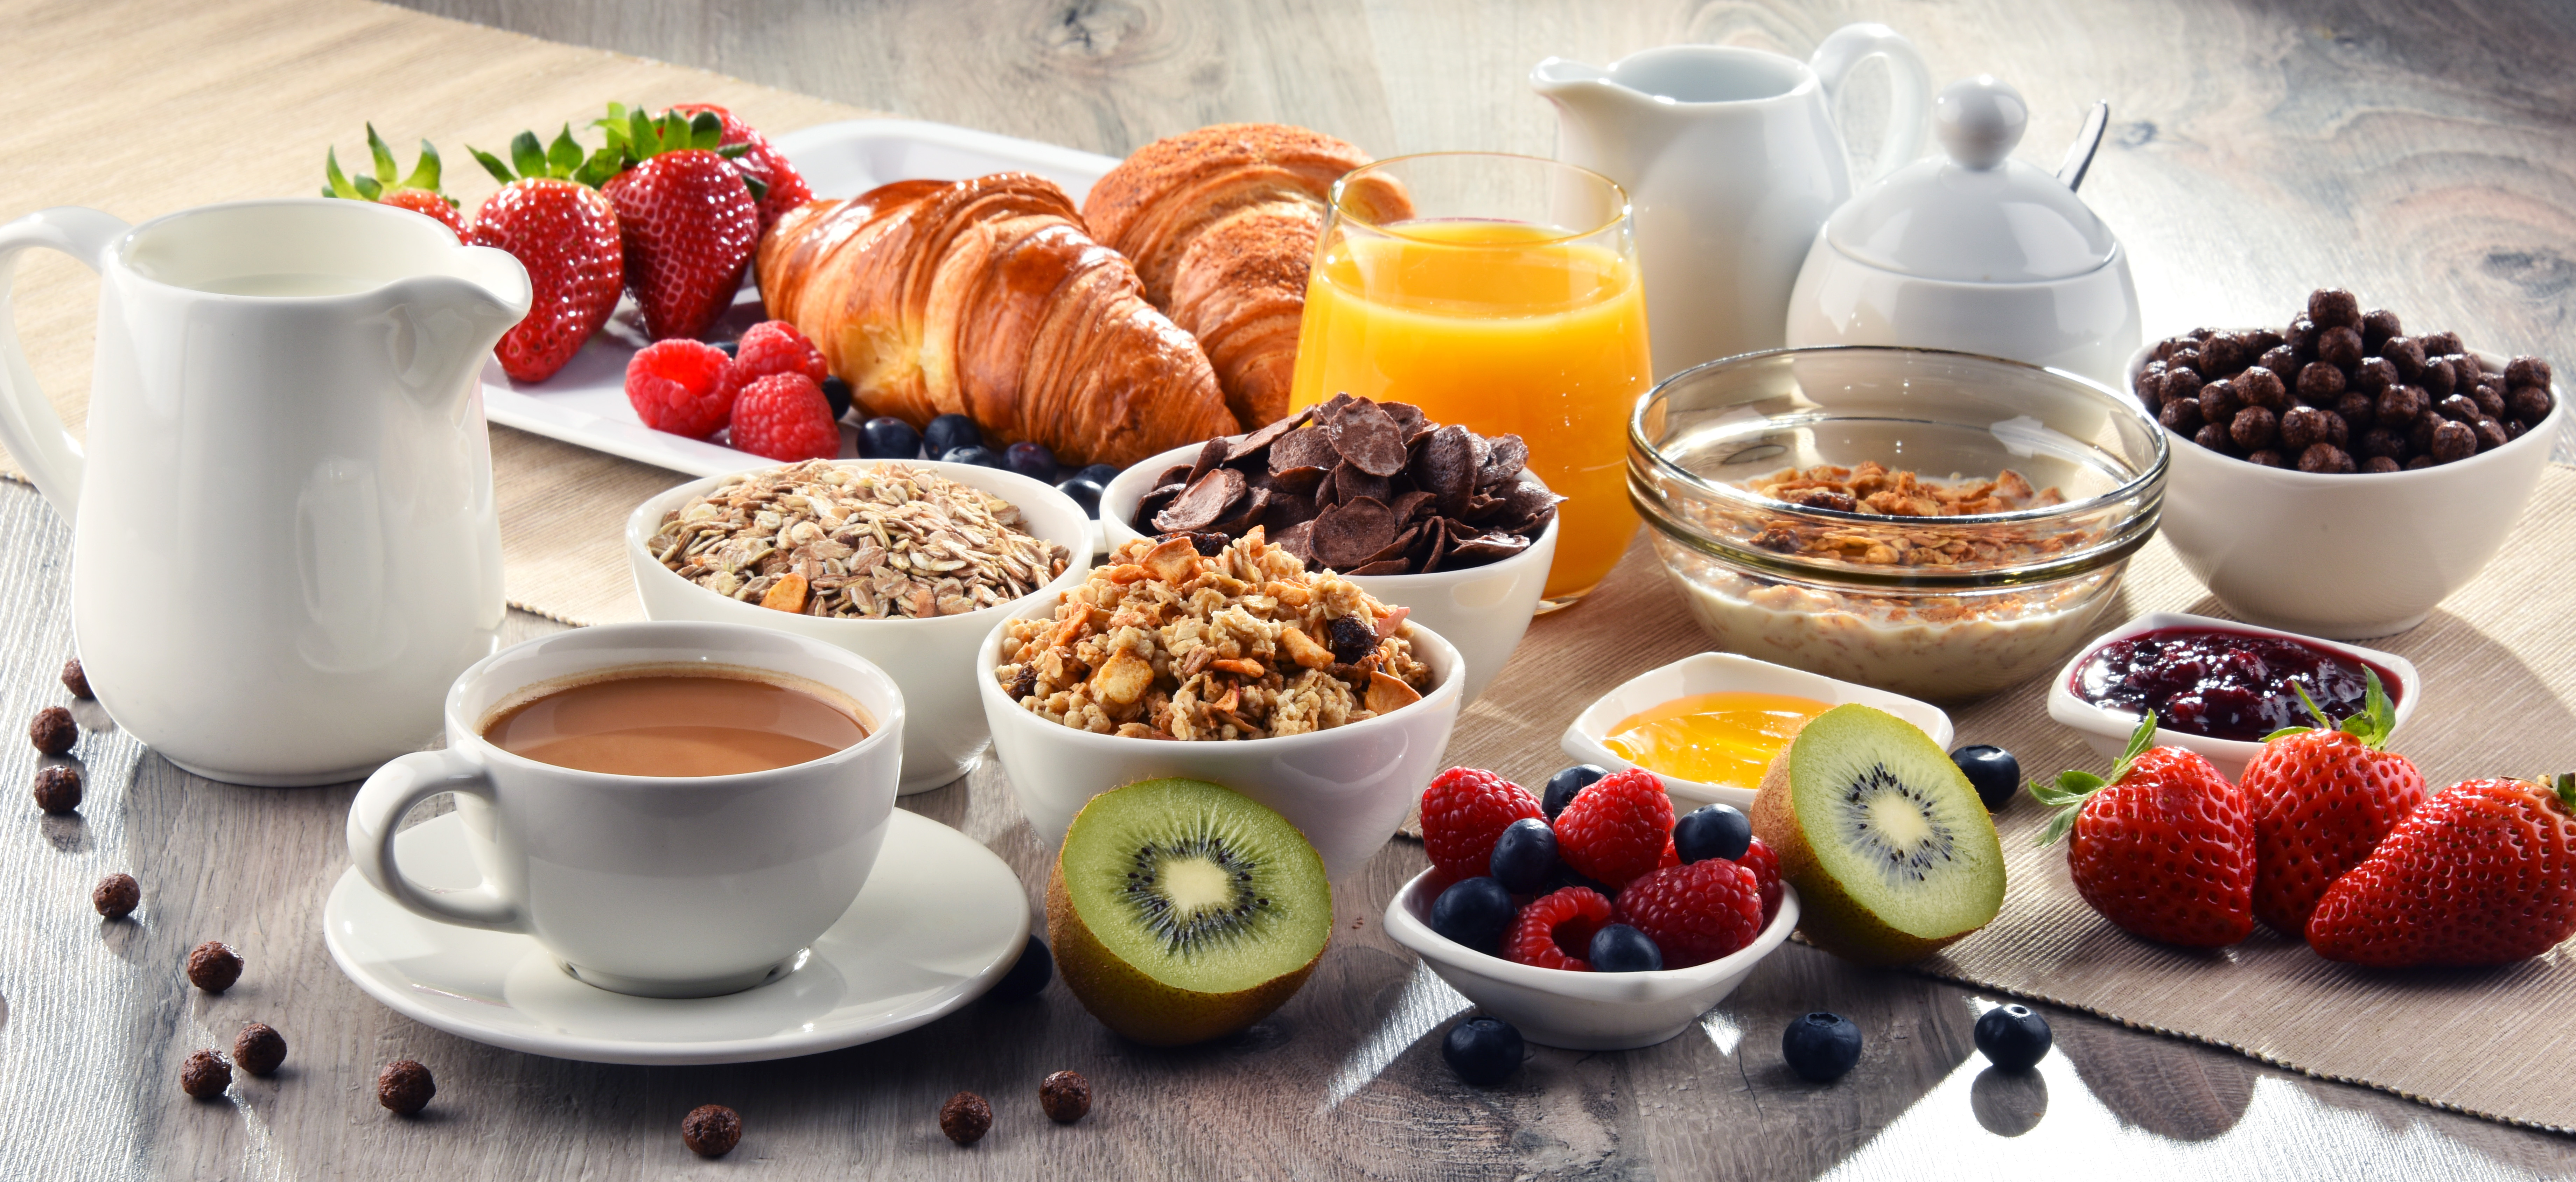 Aufbau eines kontinentalen Frühstücks | Quelle: Shutterstock